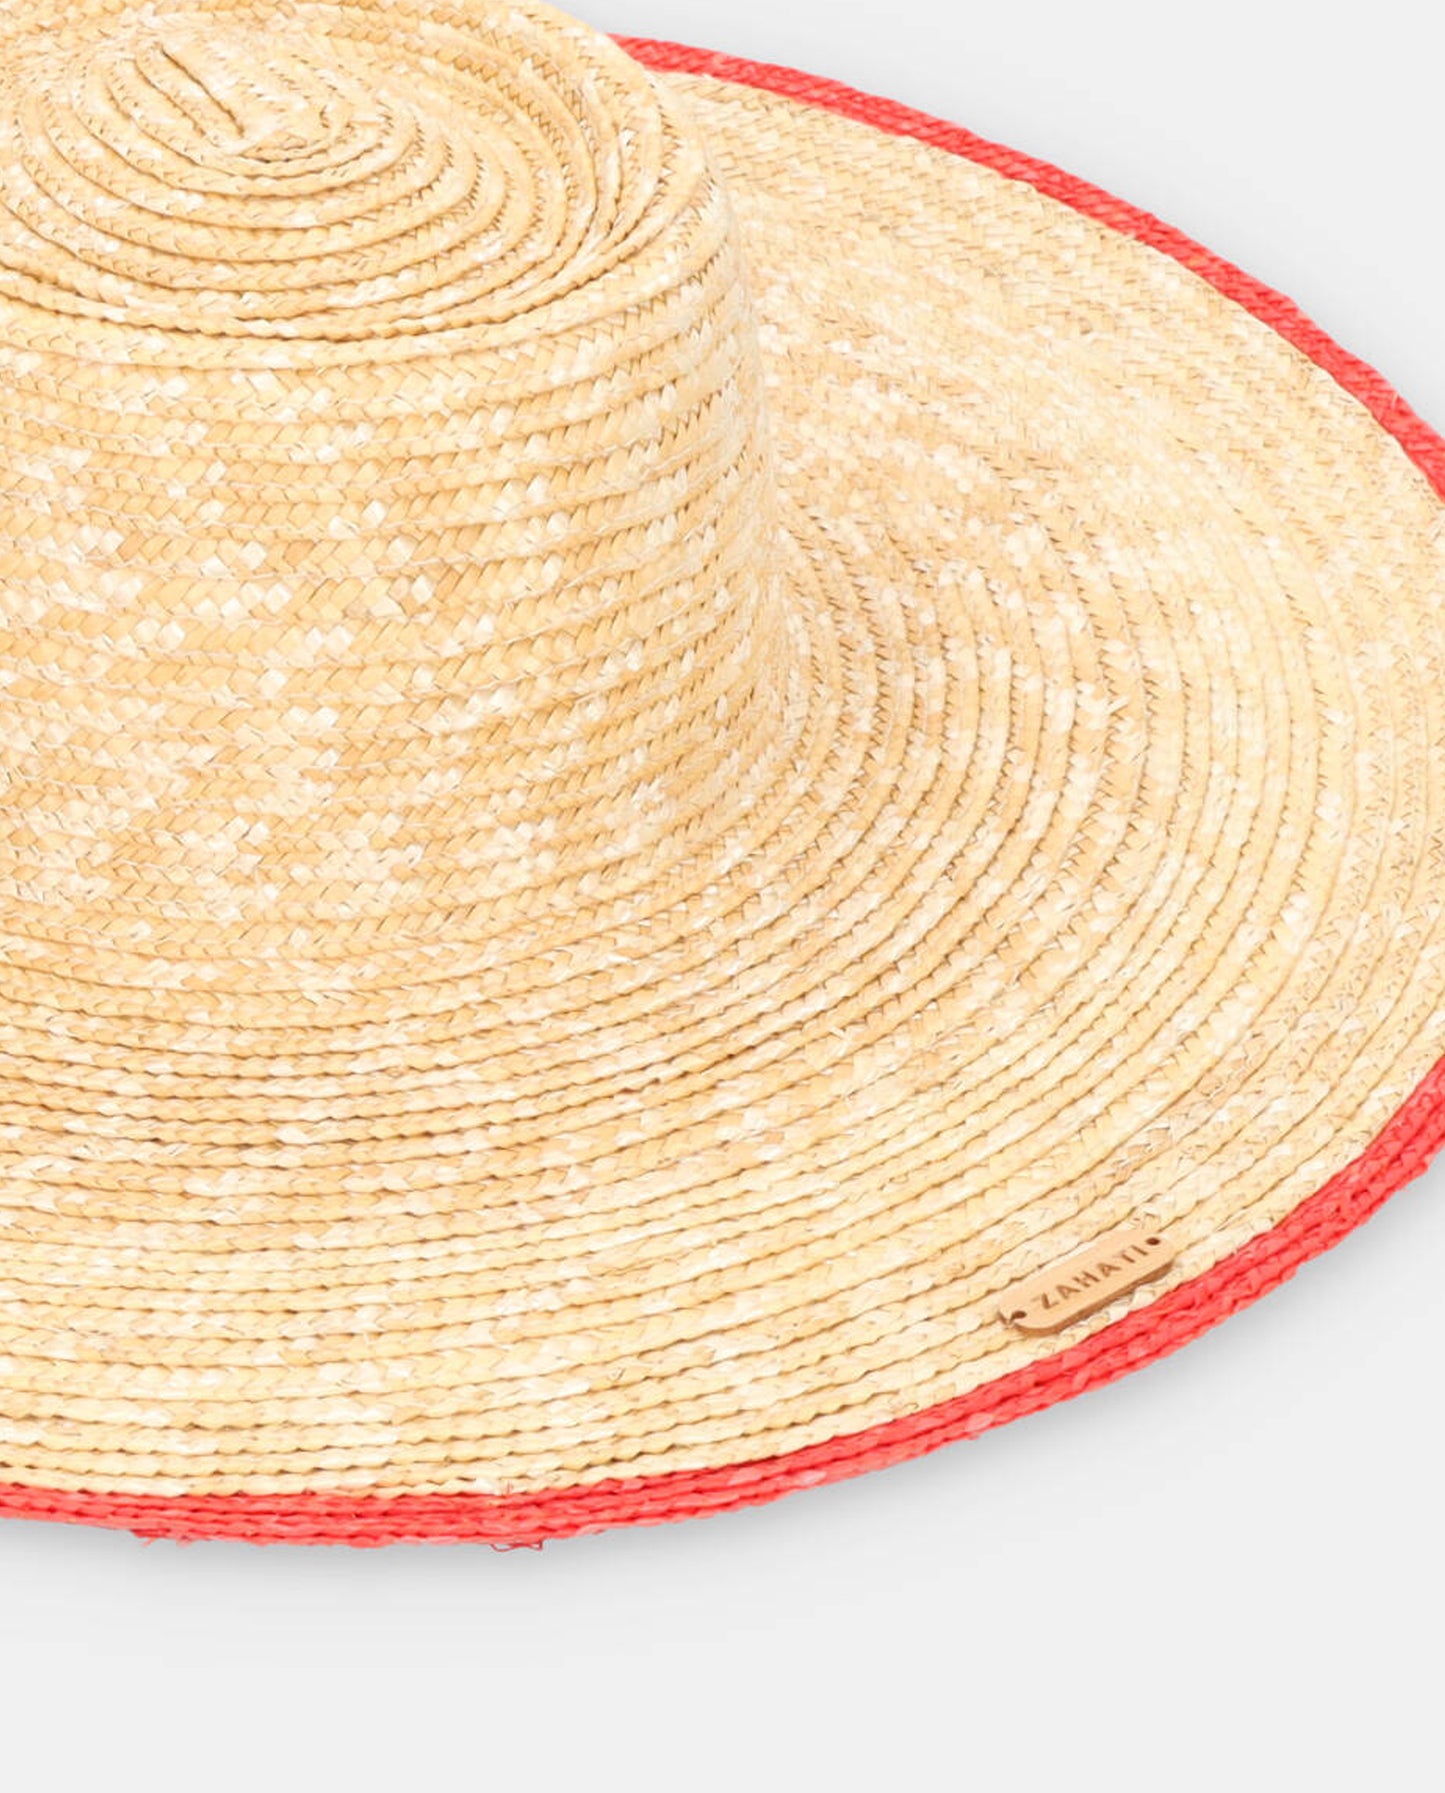 Sombrero de Paja Pork-Pie linea roja ala L